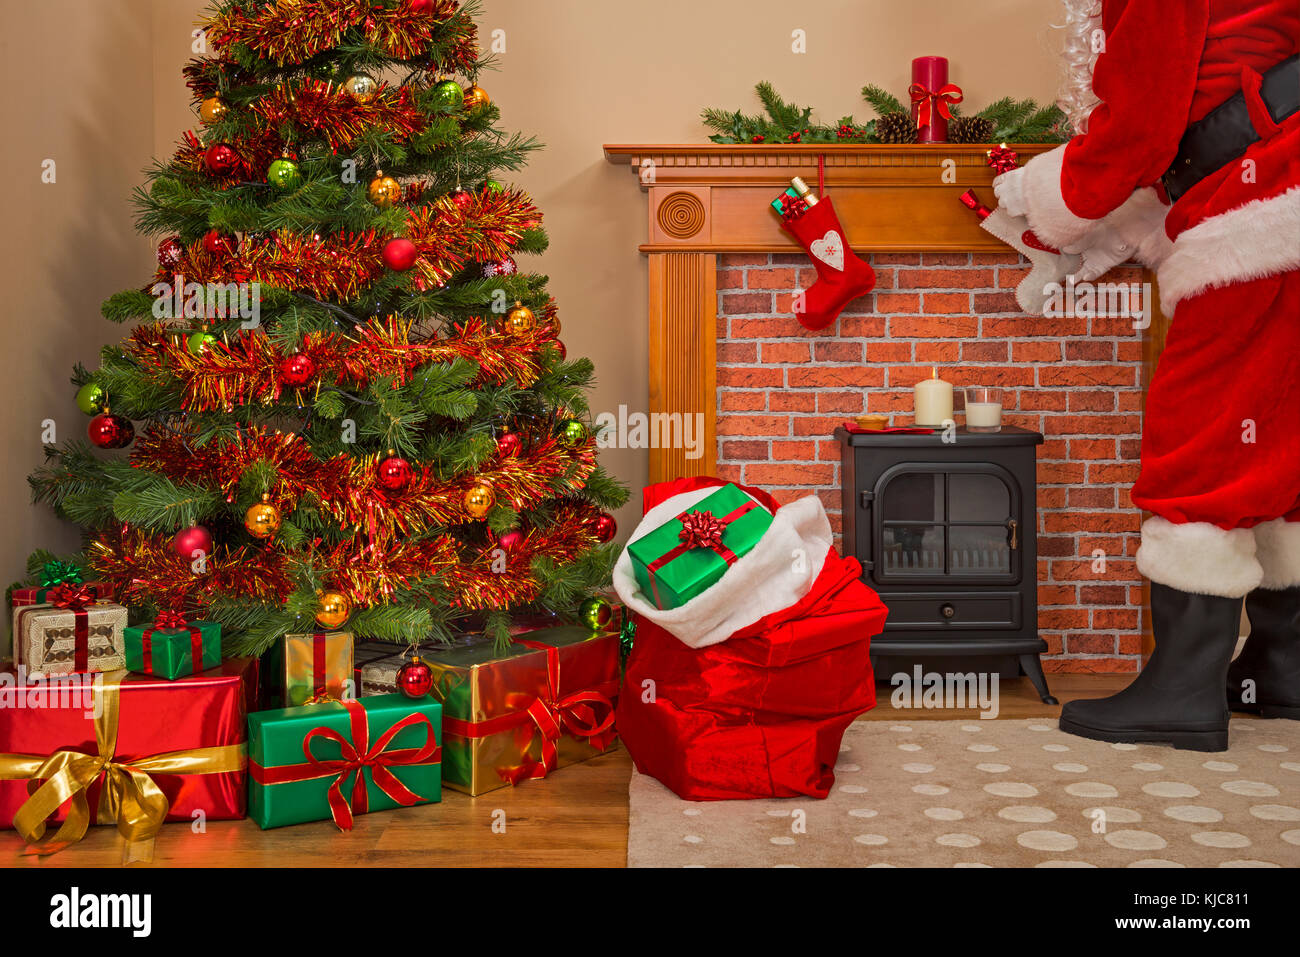 Santa Claus entregando regalos regalos envueltos bajo el árbol de navidad con un saco lleno de juguetes para niños y niñas buenas. Foto de stock